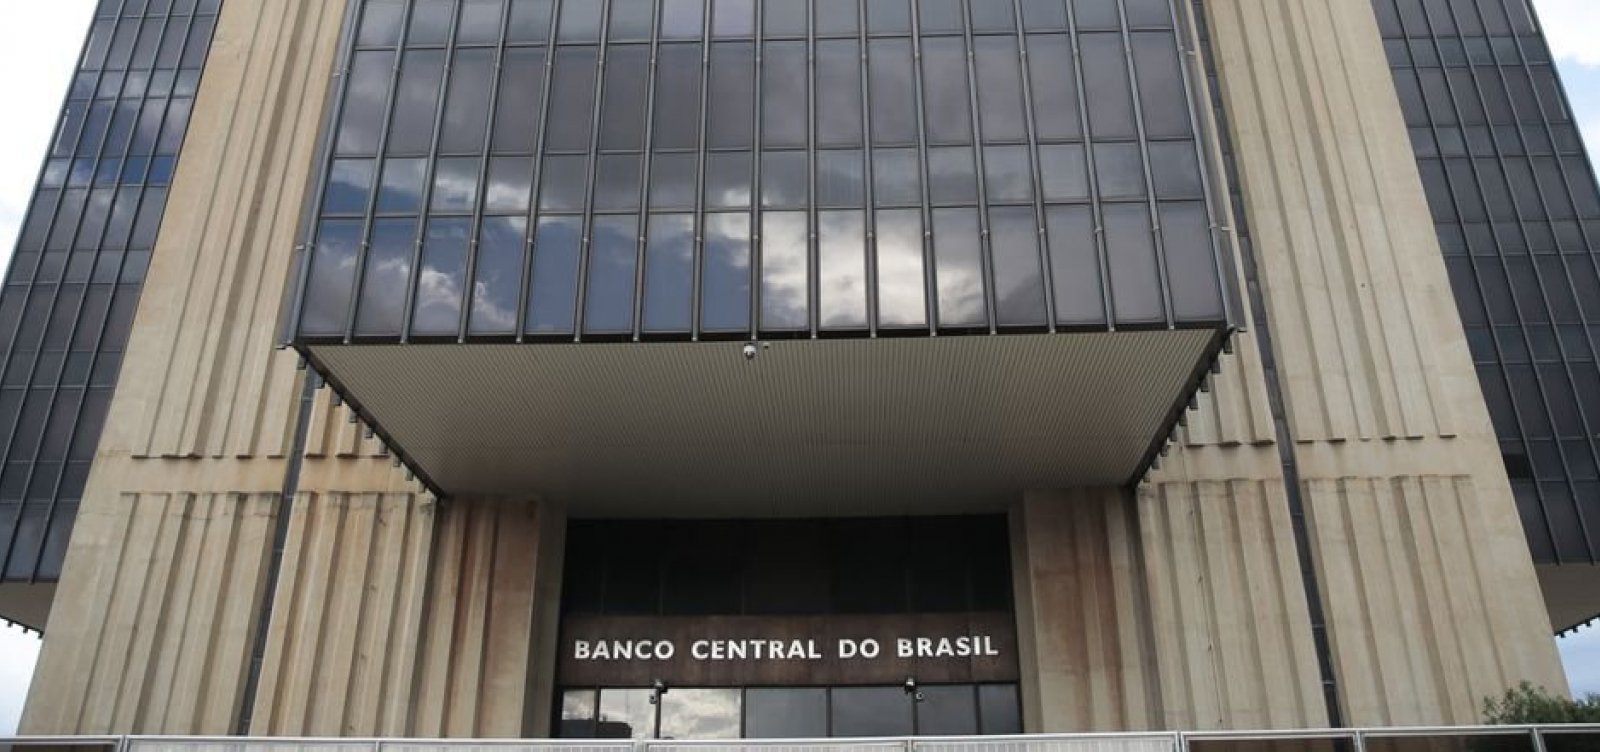 Mesmo com site fora do ar nesta terça, brasileiros recuperam R$ 900 mil perdidos em bancos